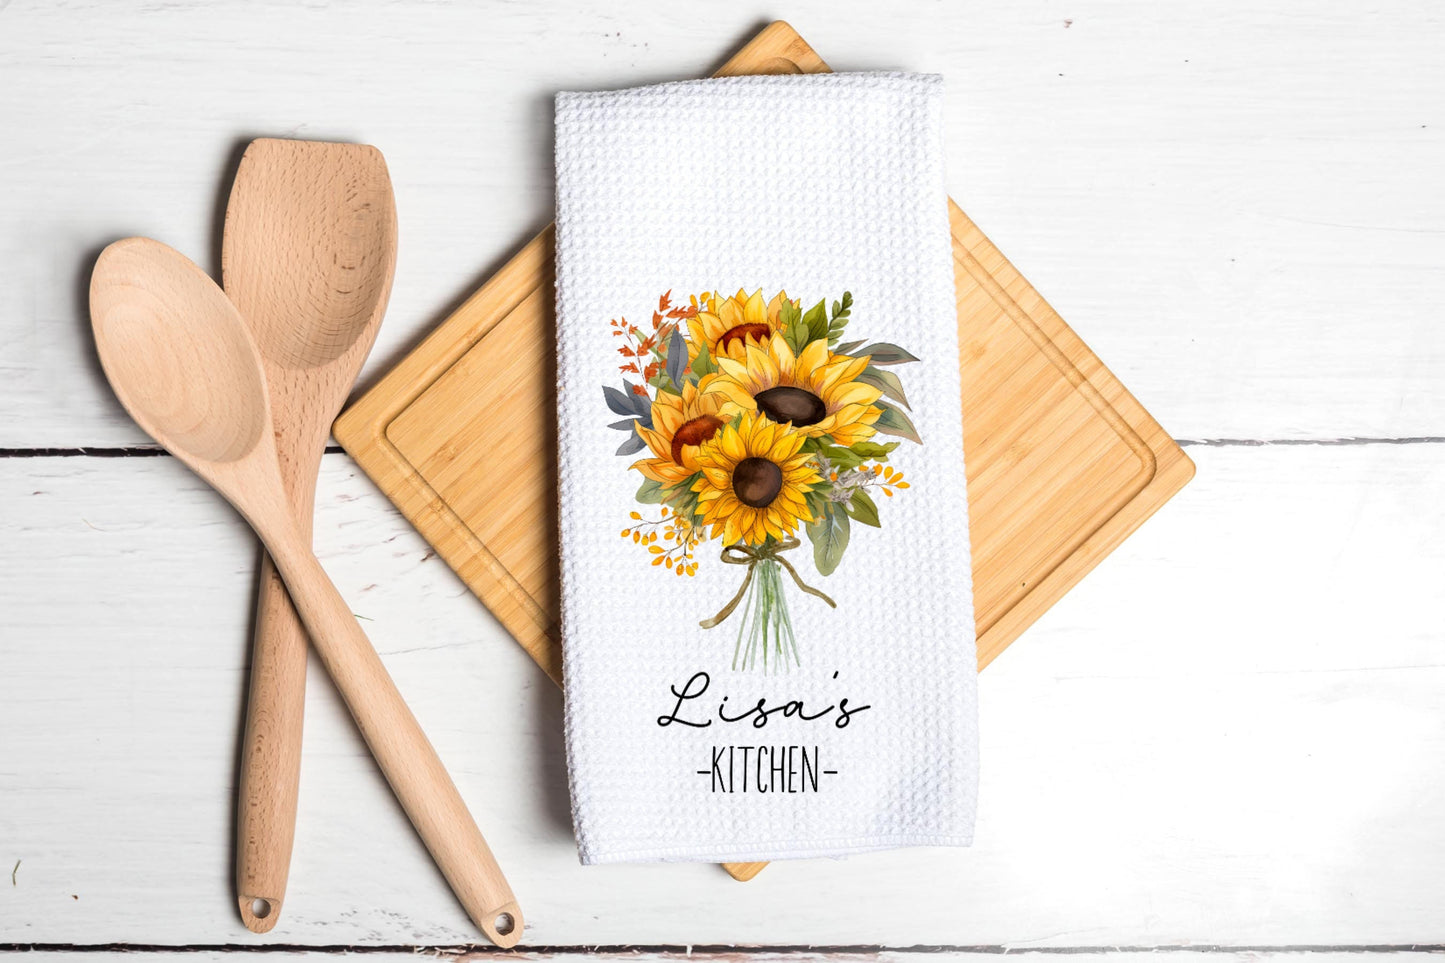 Personalized Tea Dish Towel - Sunflower Bouquet Floral Tea Towel Kitchen Décor - Housewarming Farm Decorations house Towel - Gift For Mom